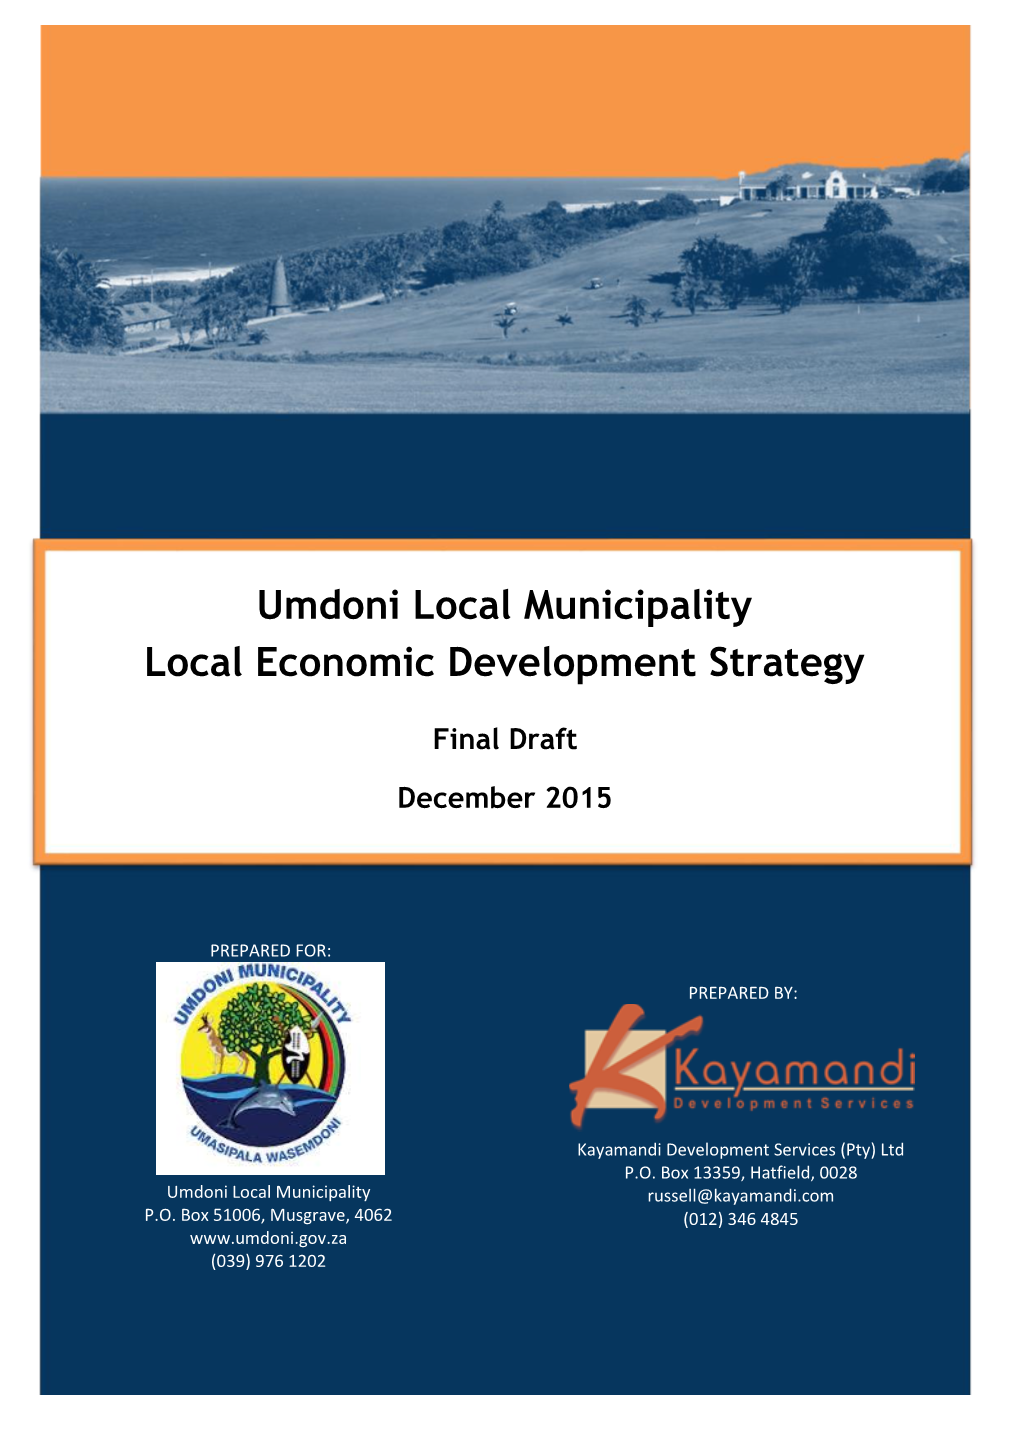 Umdoni Local Municipality Local Economic Development Strategy